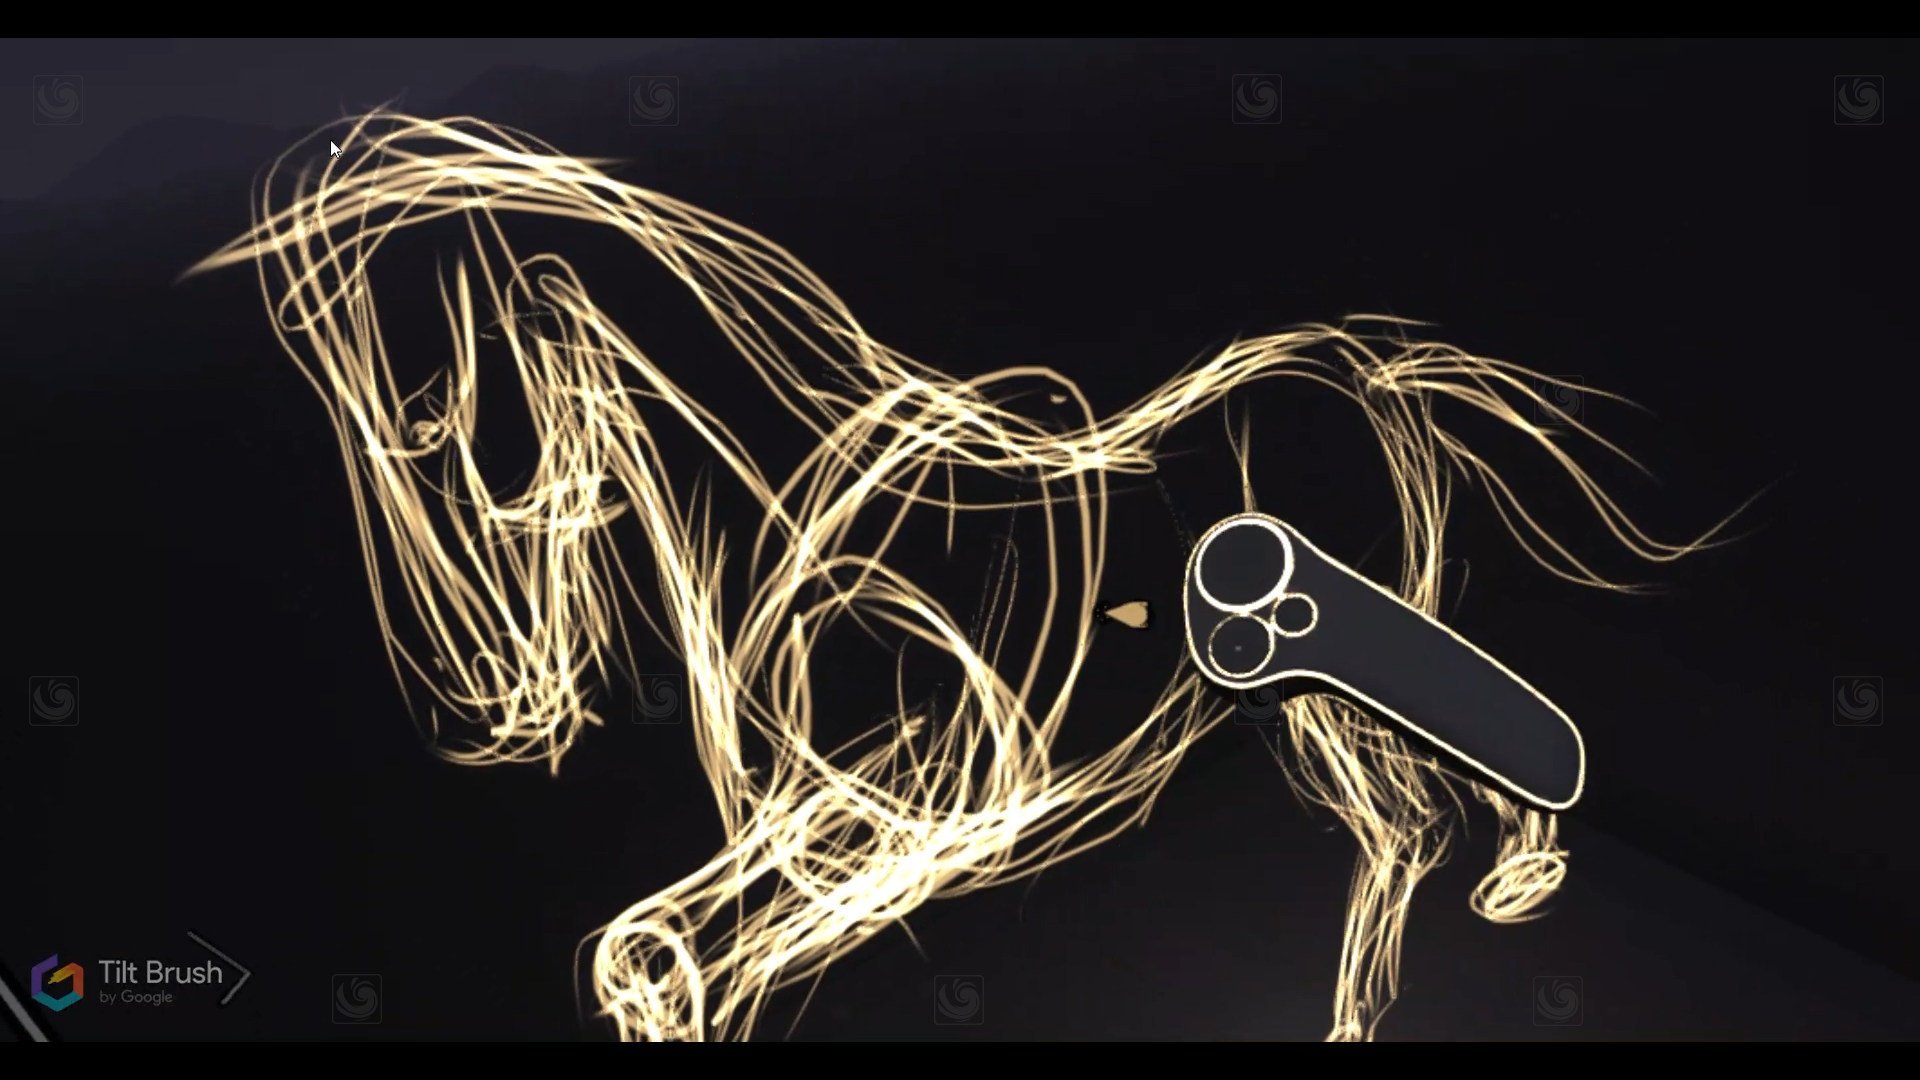 Modeling a horse with Tilt Brush